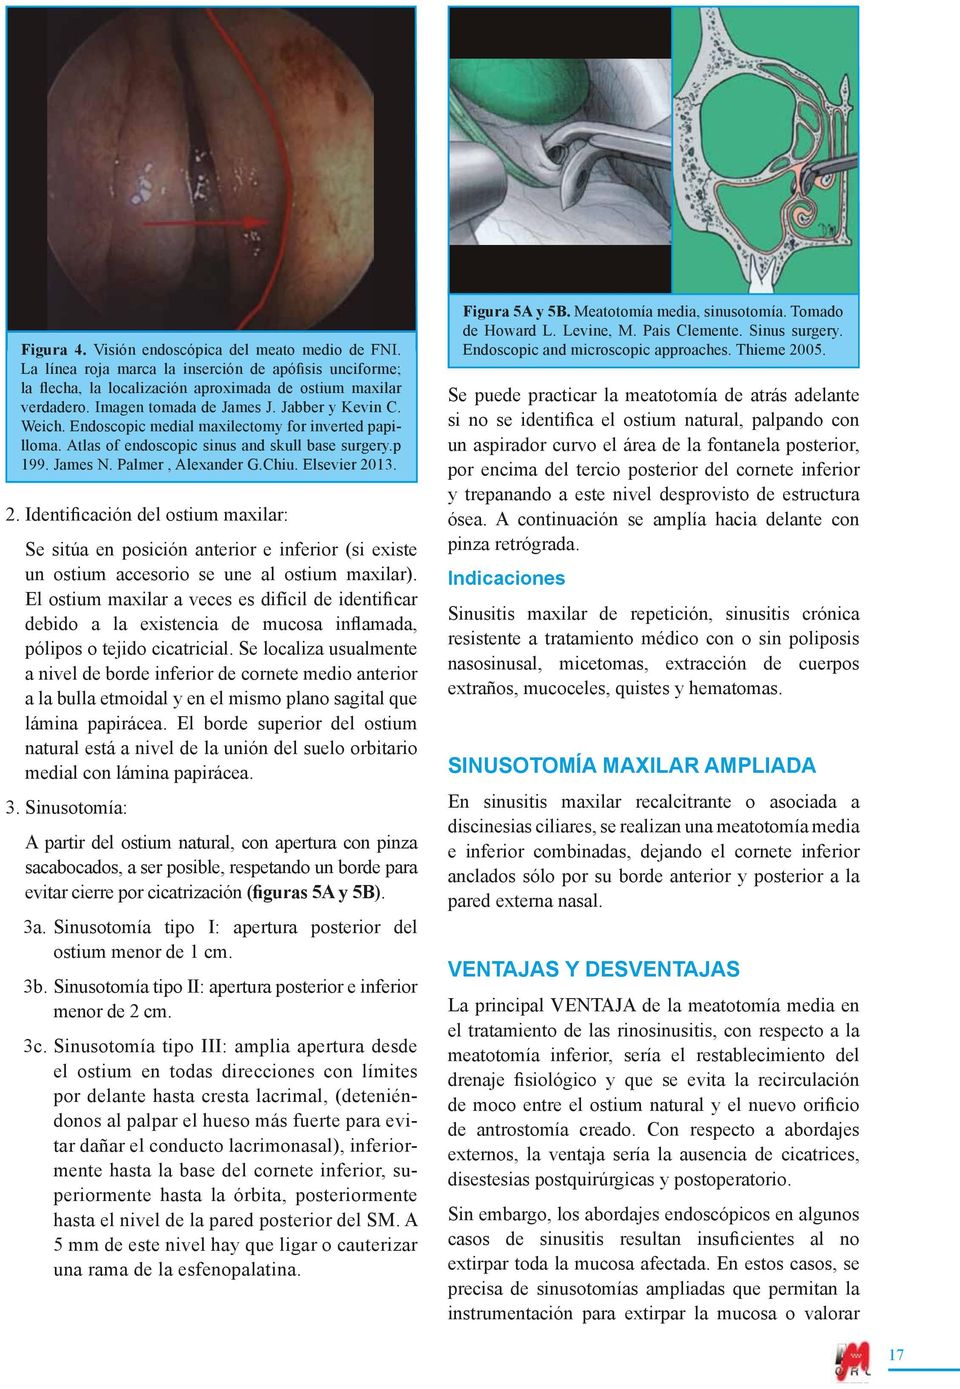 Elsevier 2013. 2. Identificación del ostium maxilar: Se sitúa en posición anterior e inferior (si existe un ostium accesorio se une al ostium maxilar).